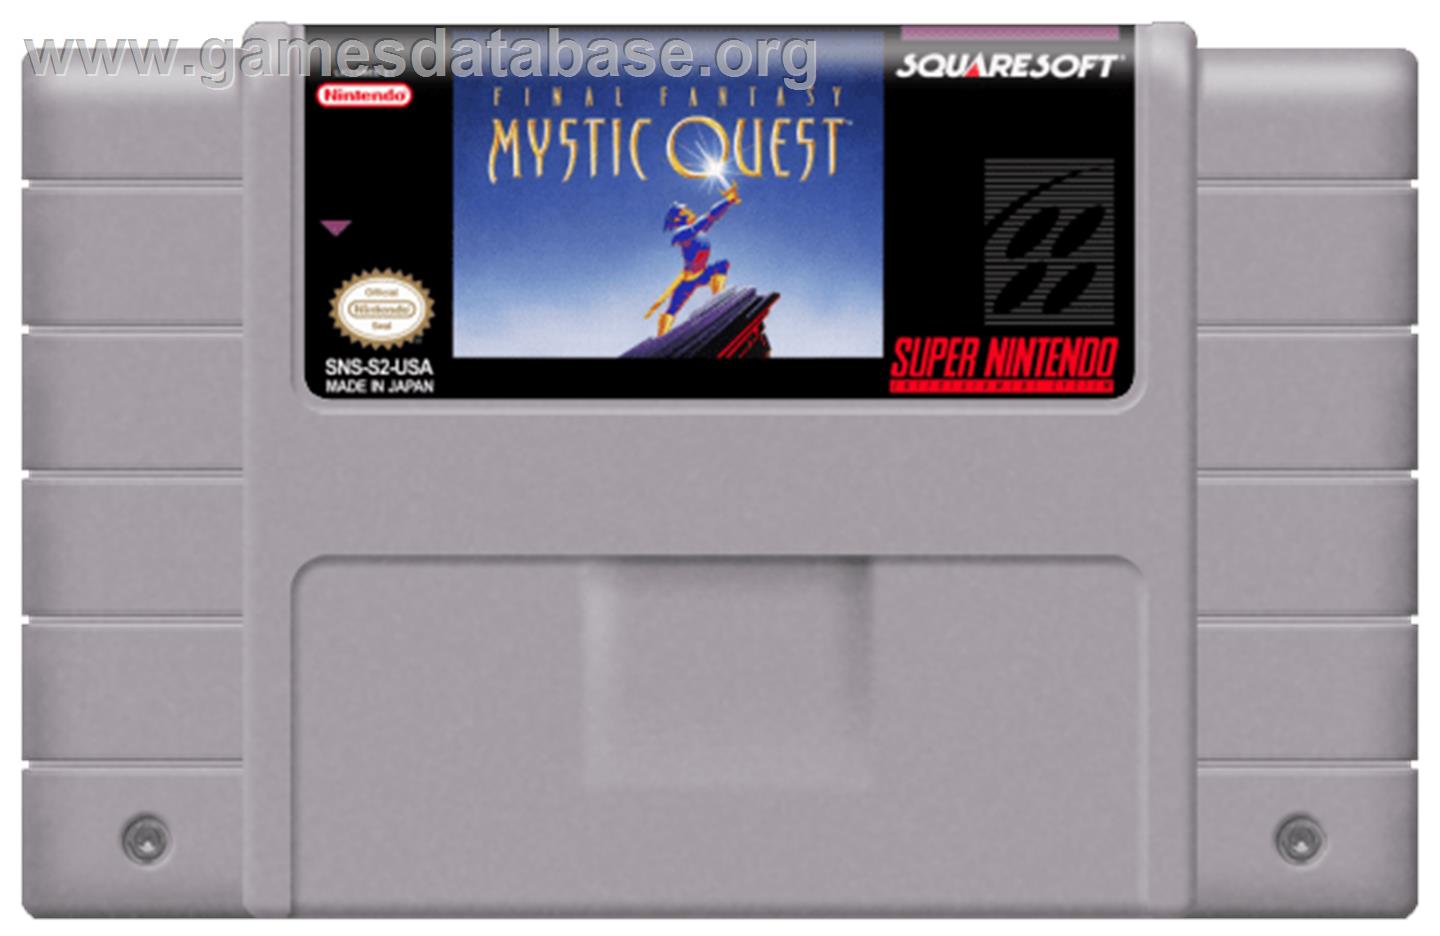 Final Fantasy: Mystic Quest - Nintendo SNES - Artwork - Cartridge